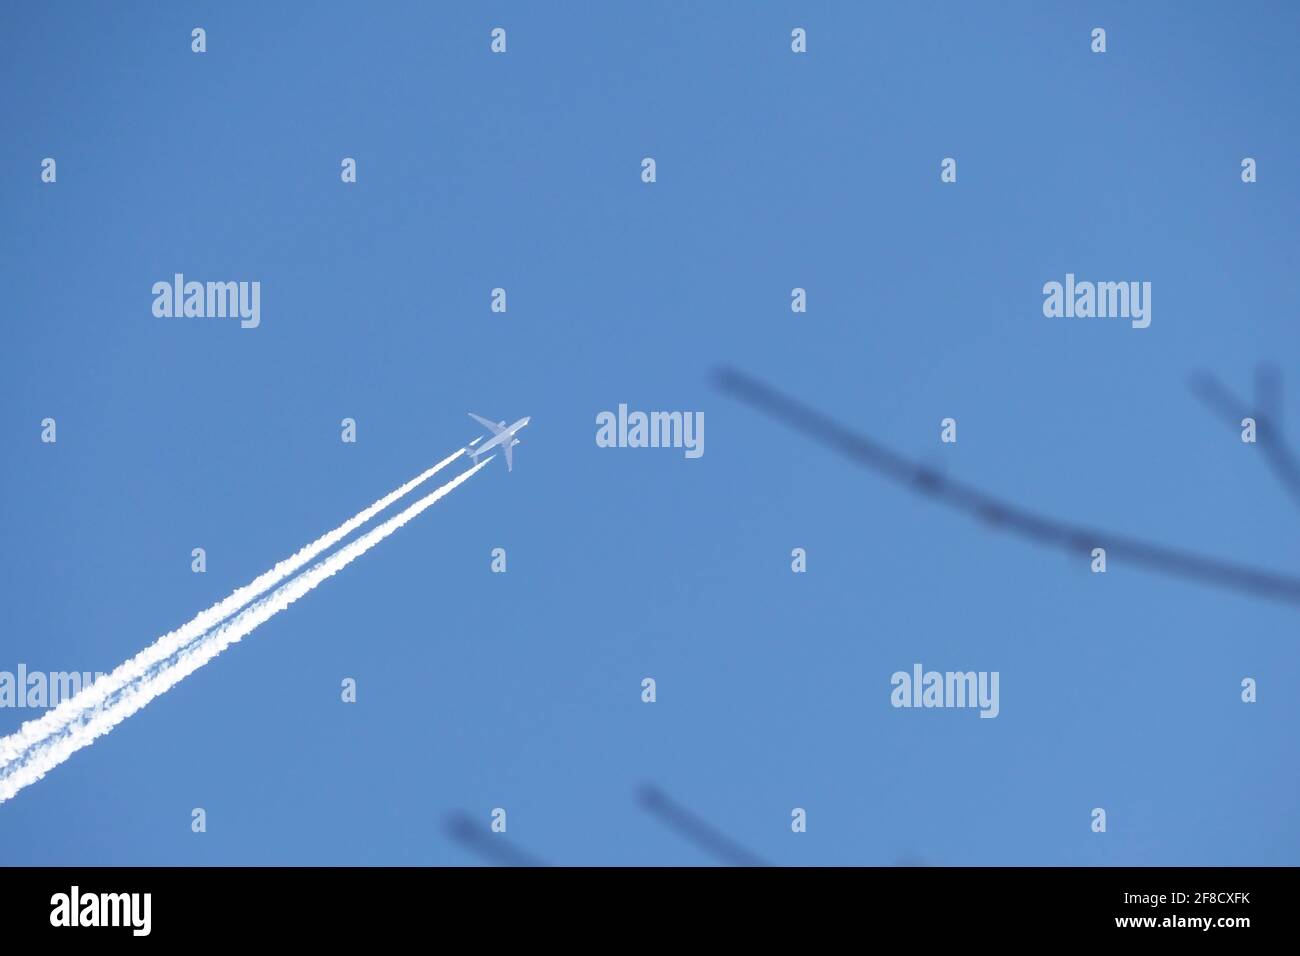 Ein Düsenflugzeug am Himmel. Eine Doppelspur von einem Düsenflugzeug in einem blauen Himmel. Stockfoto